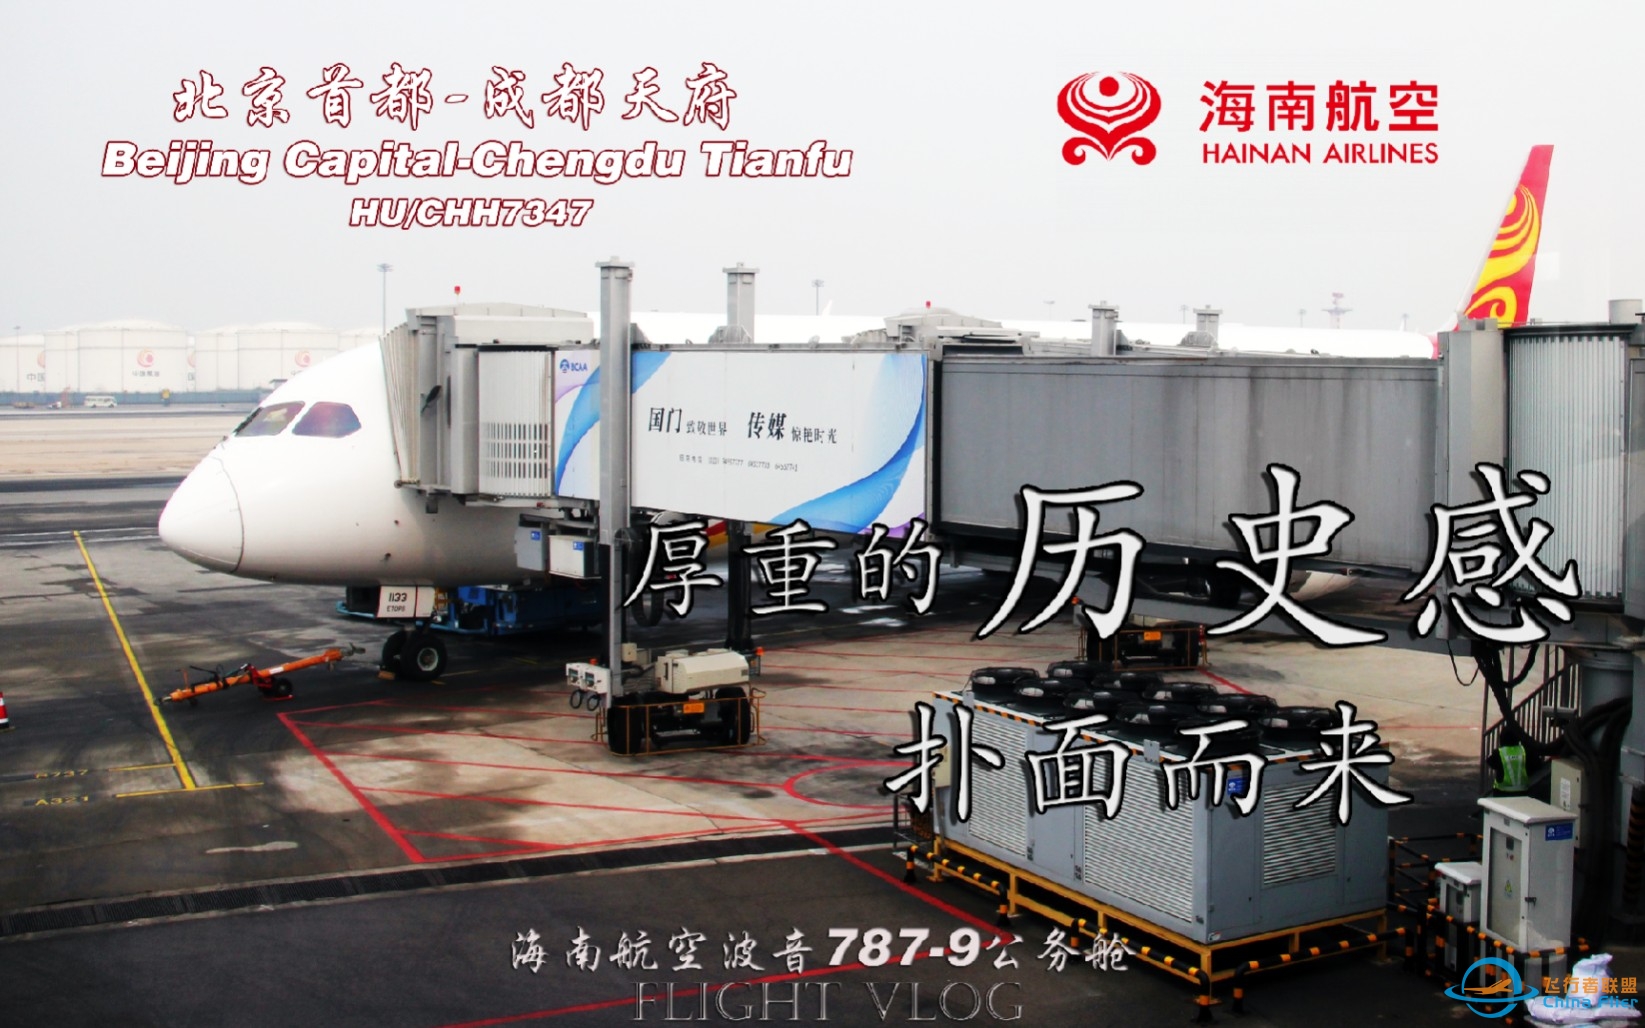 【航空Vlog】 仿佛回到了十年前！北京首都-成都天府 海南航空B787-9公务舱飞行体验-6763 